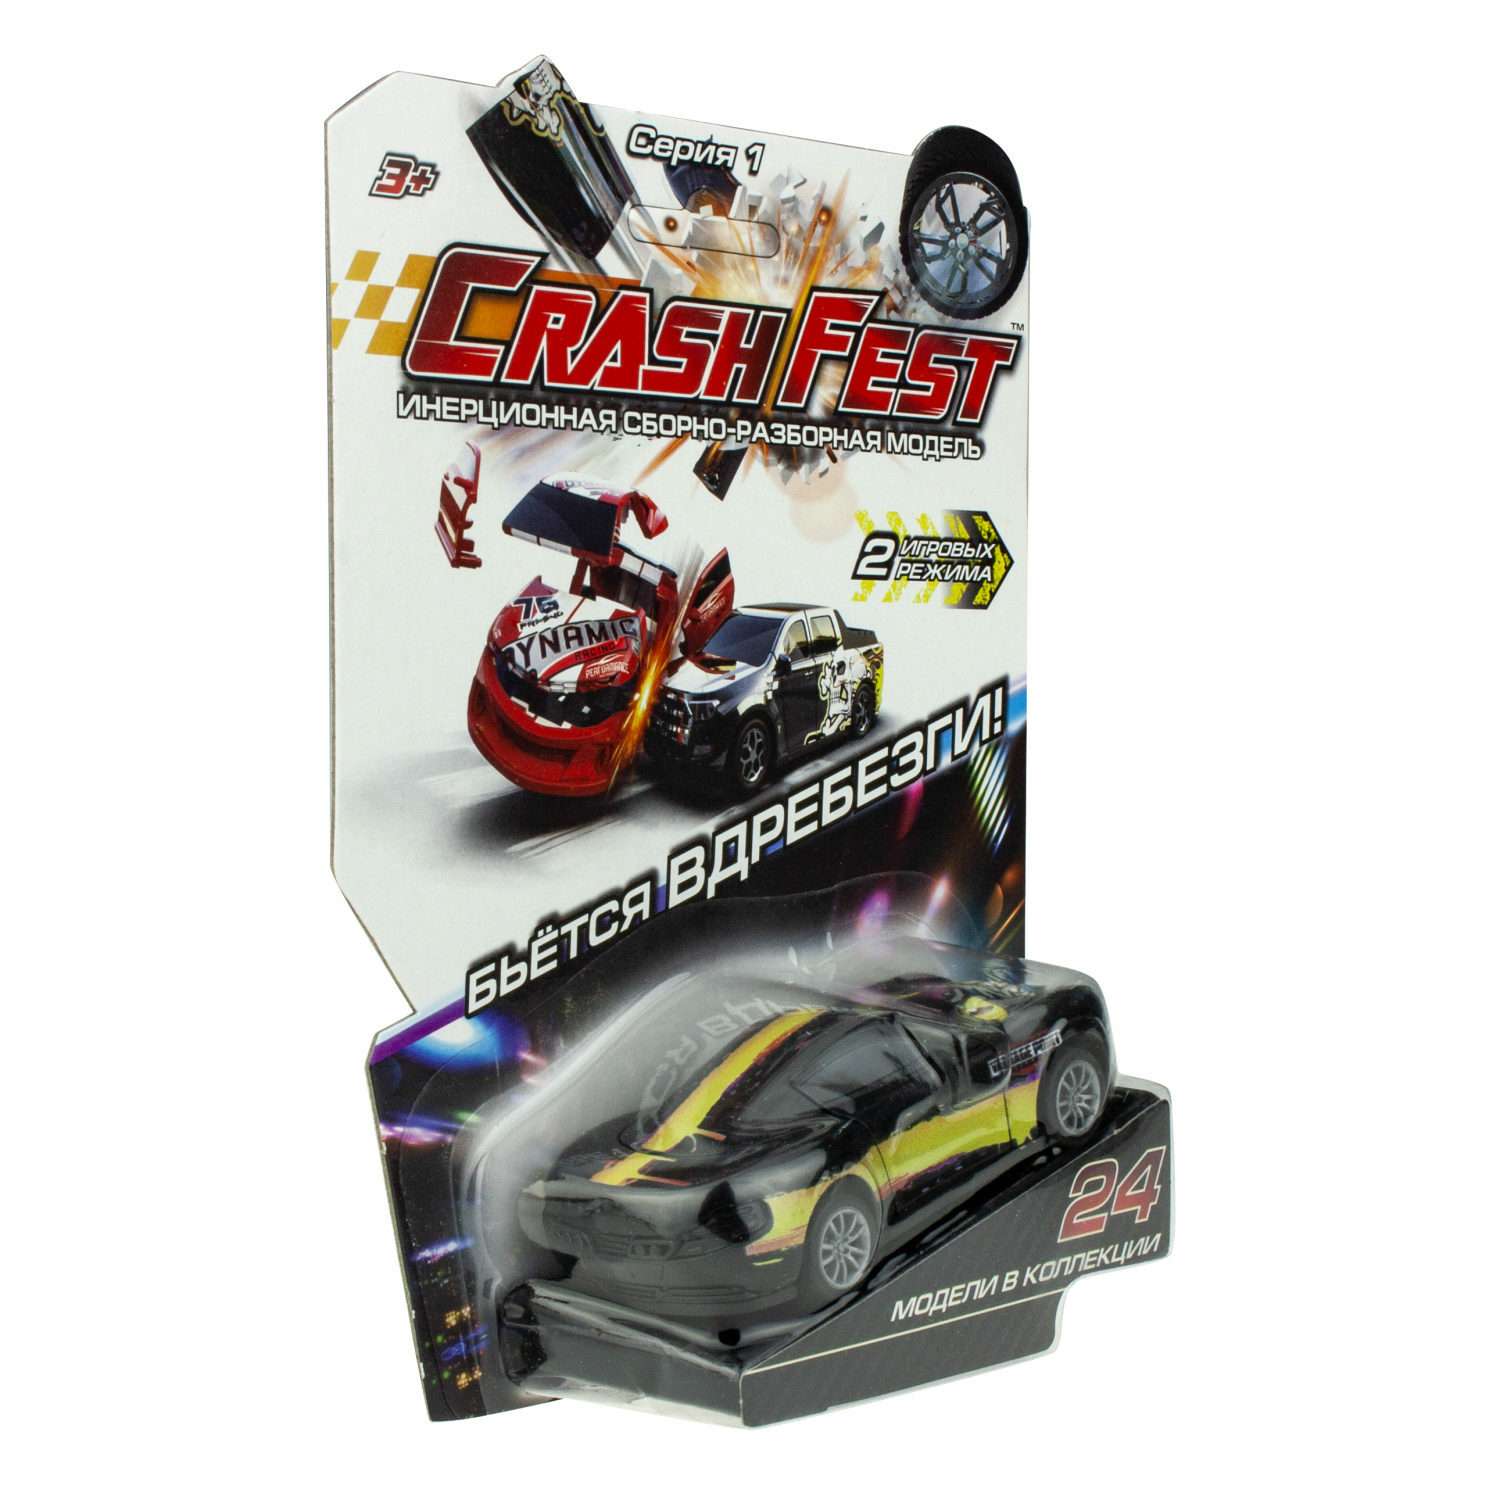 Машинка Crashfest Vantage 2в1 разборная инерционная 10 см Т17090-8 - фото 6